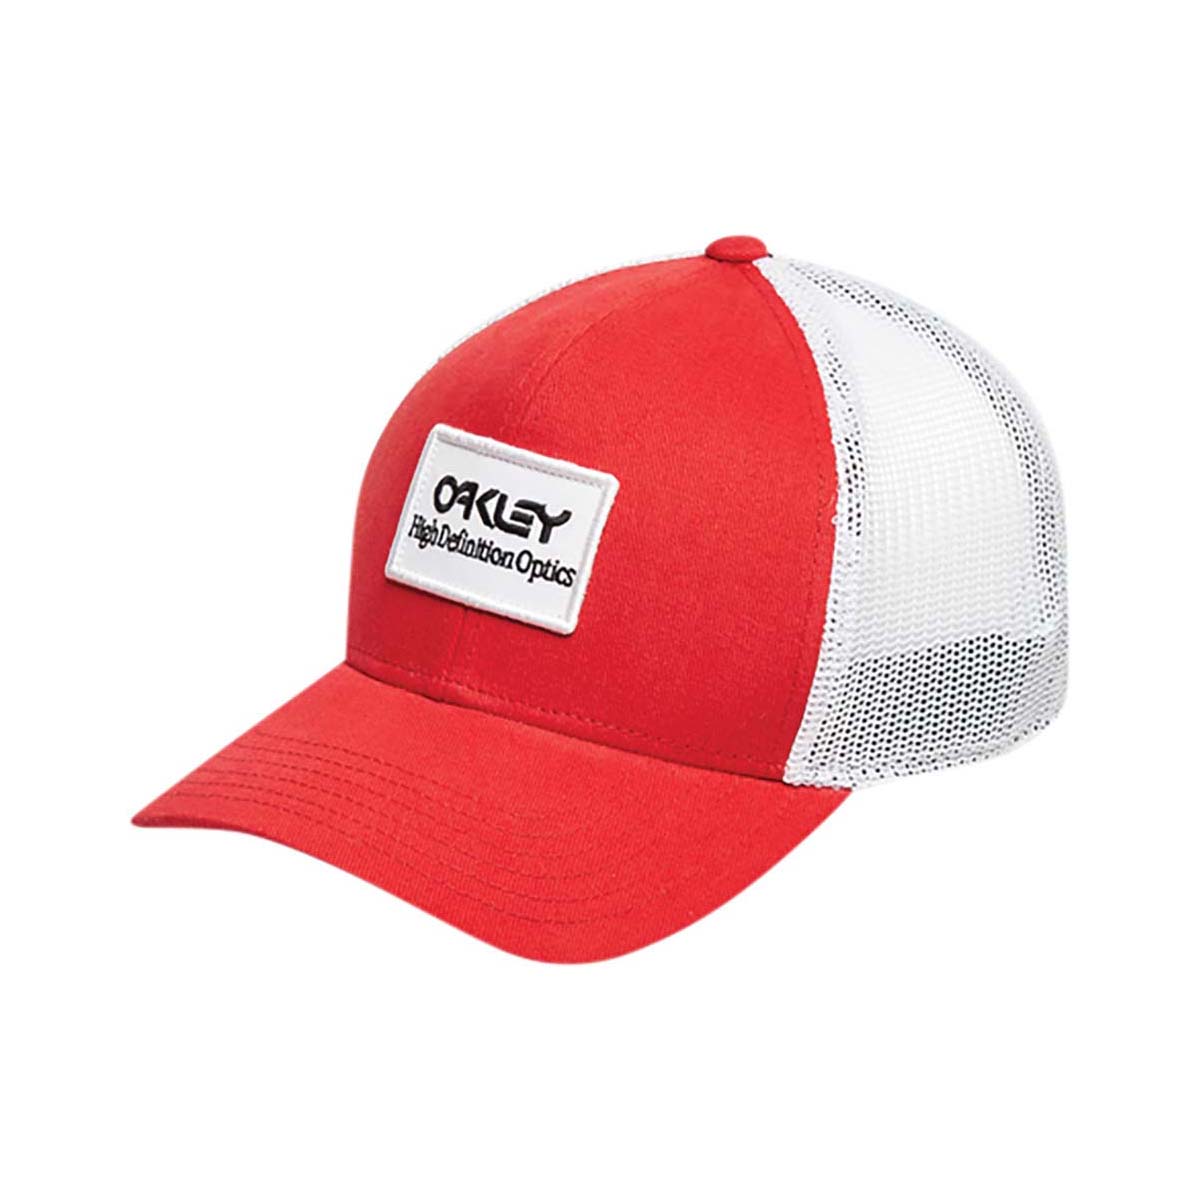 Oakley Unisex HDO Patch Trucker Cap Red